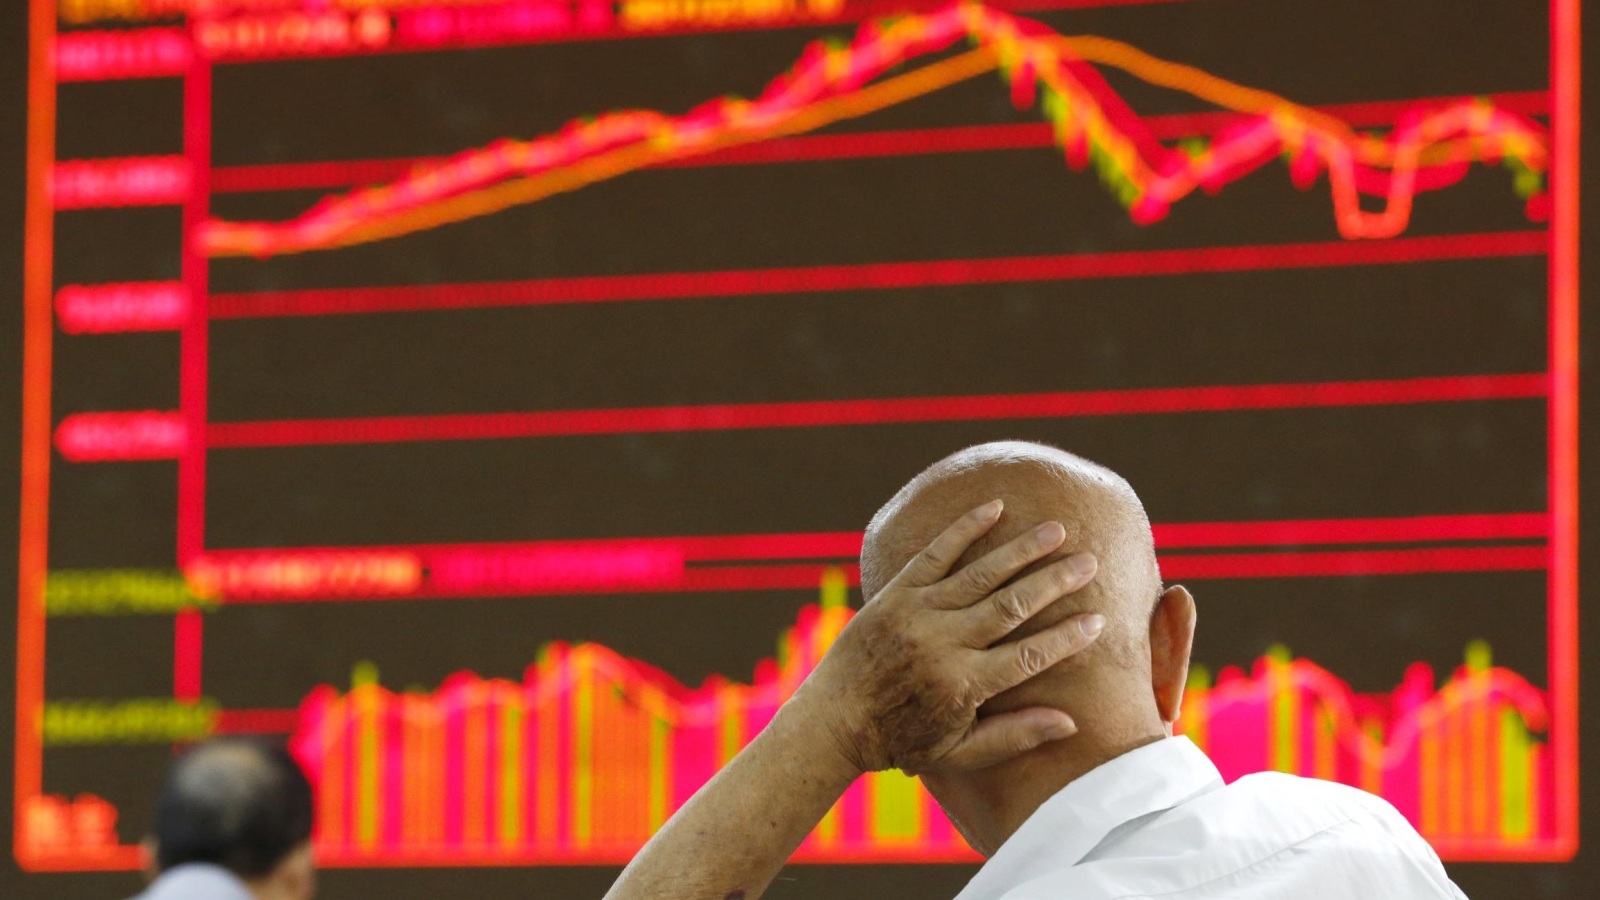 ‪مؤشرات‬ 
مؤشرات سوق الأسهم الصينية تراجعت بشكل كبير نهاية الشهر الماضي (رويترز)
